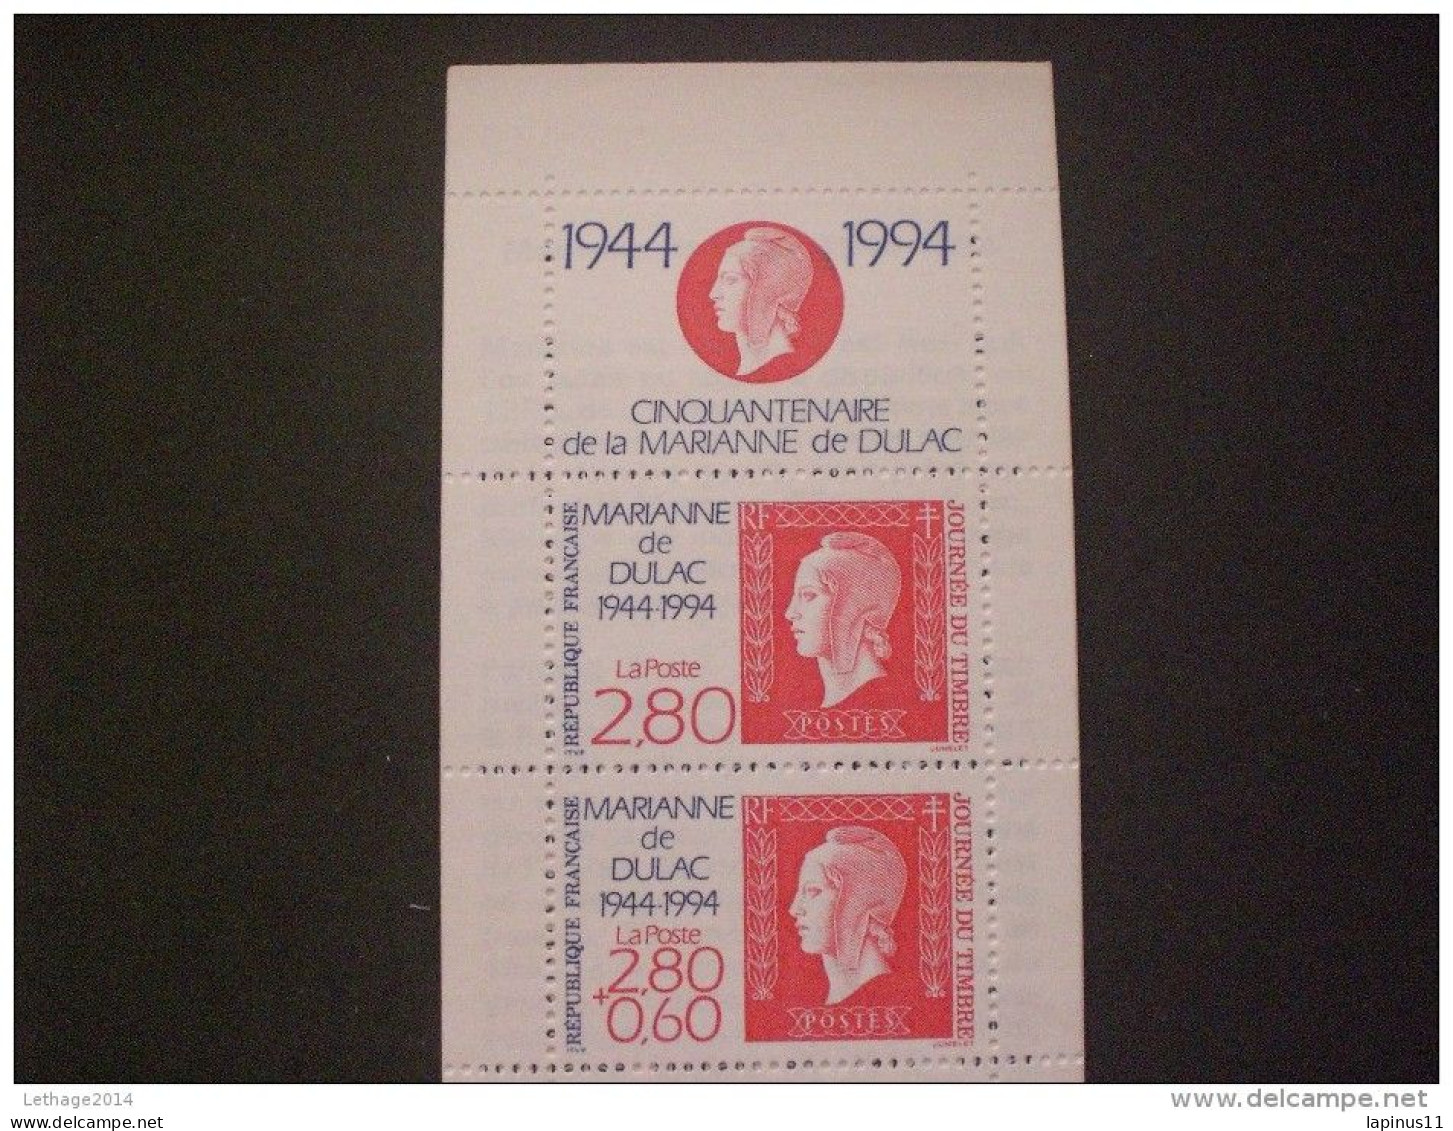 STAMPS FRANCE CARNETS 1994 Stamp Day - Journée Du Timbre